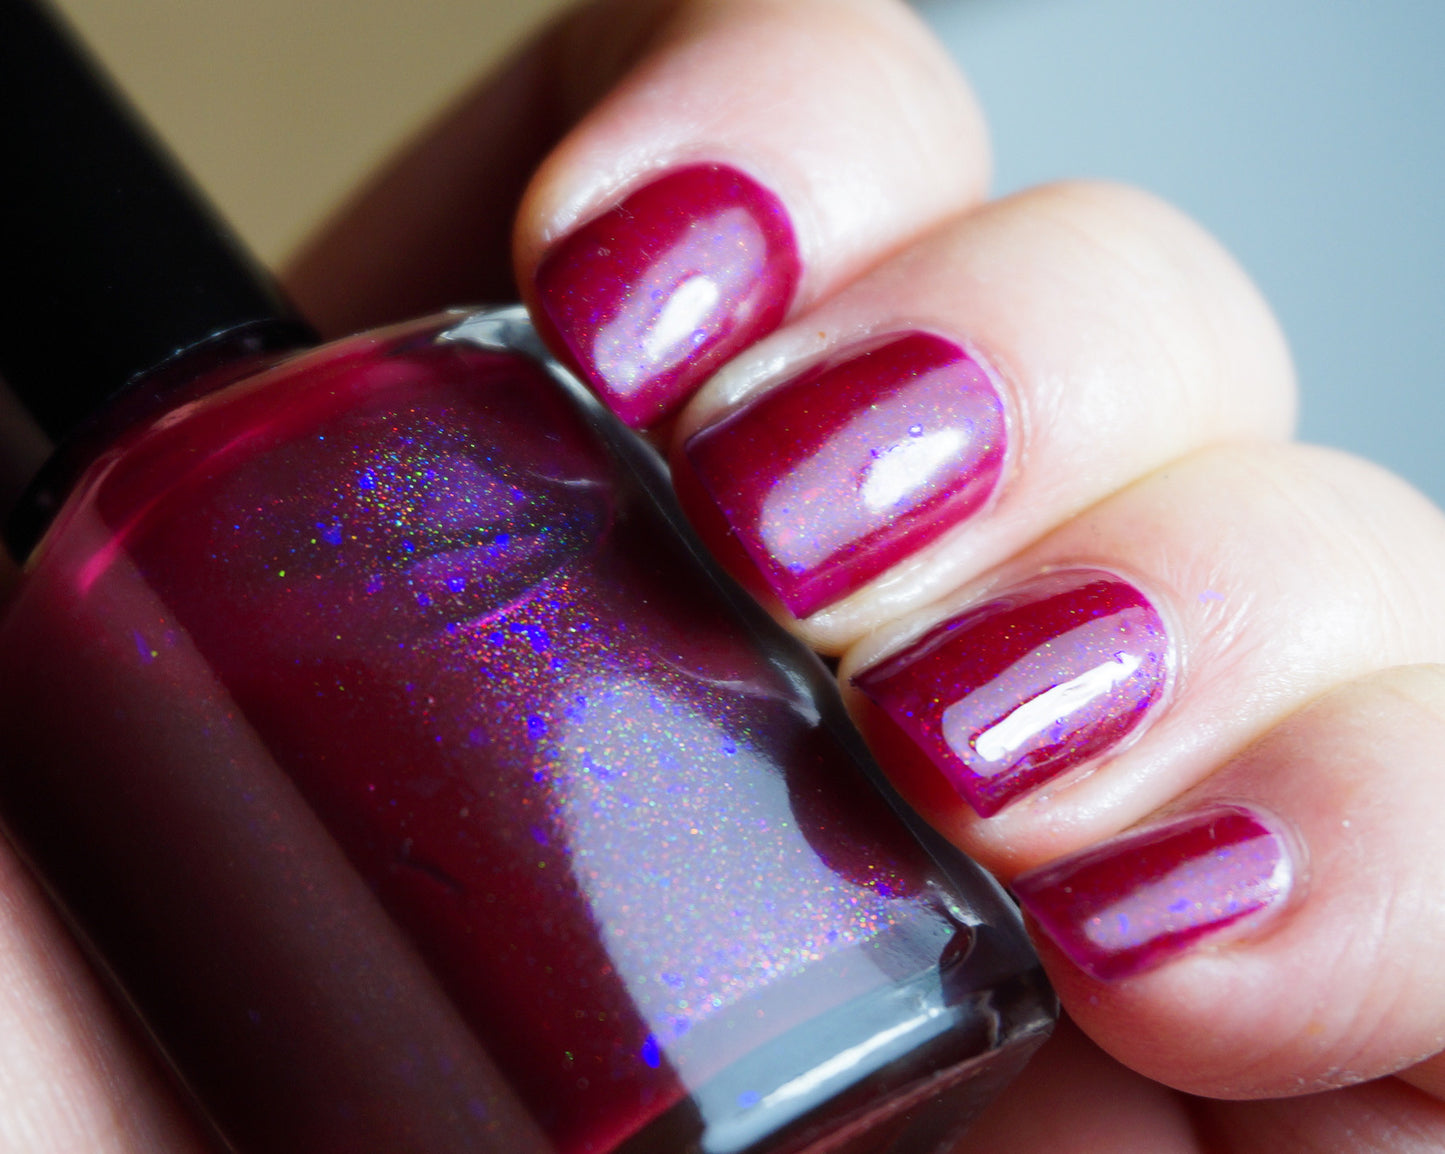 Sangreal - OG UP - raspberry red UP shimmer & violet colorshifting flakies